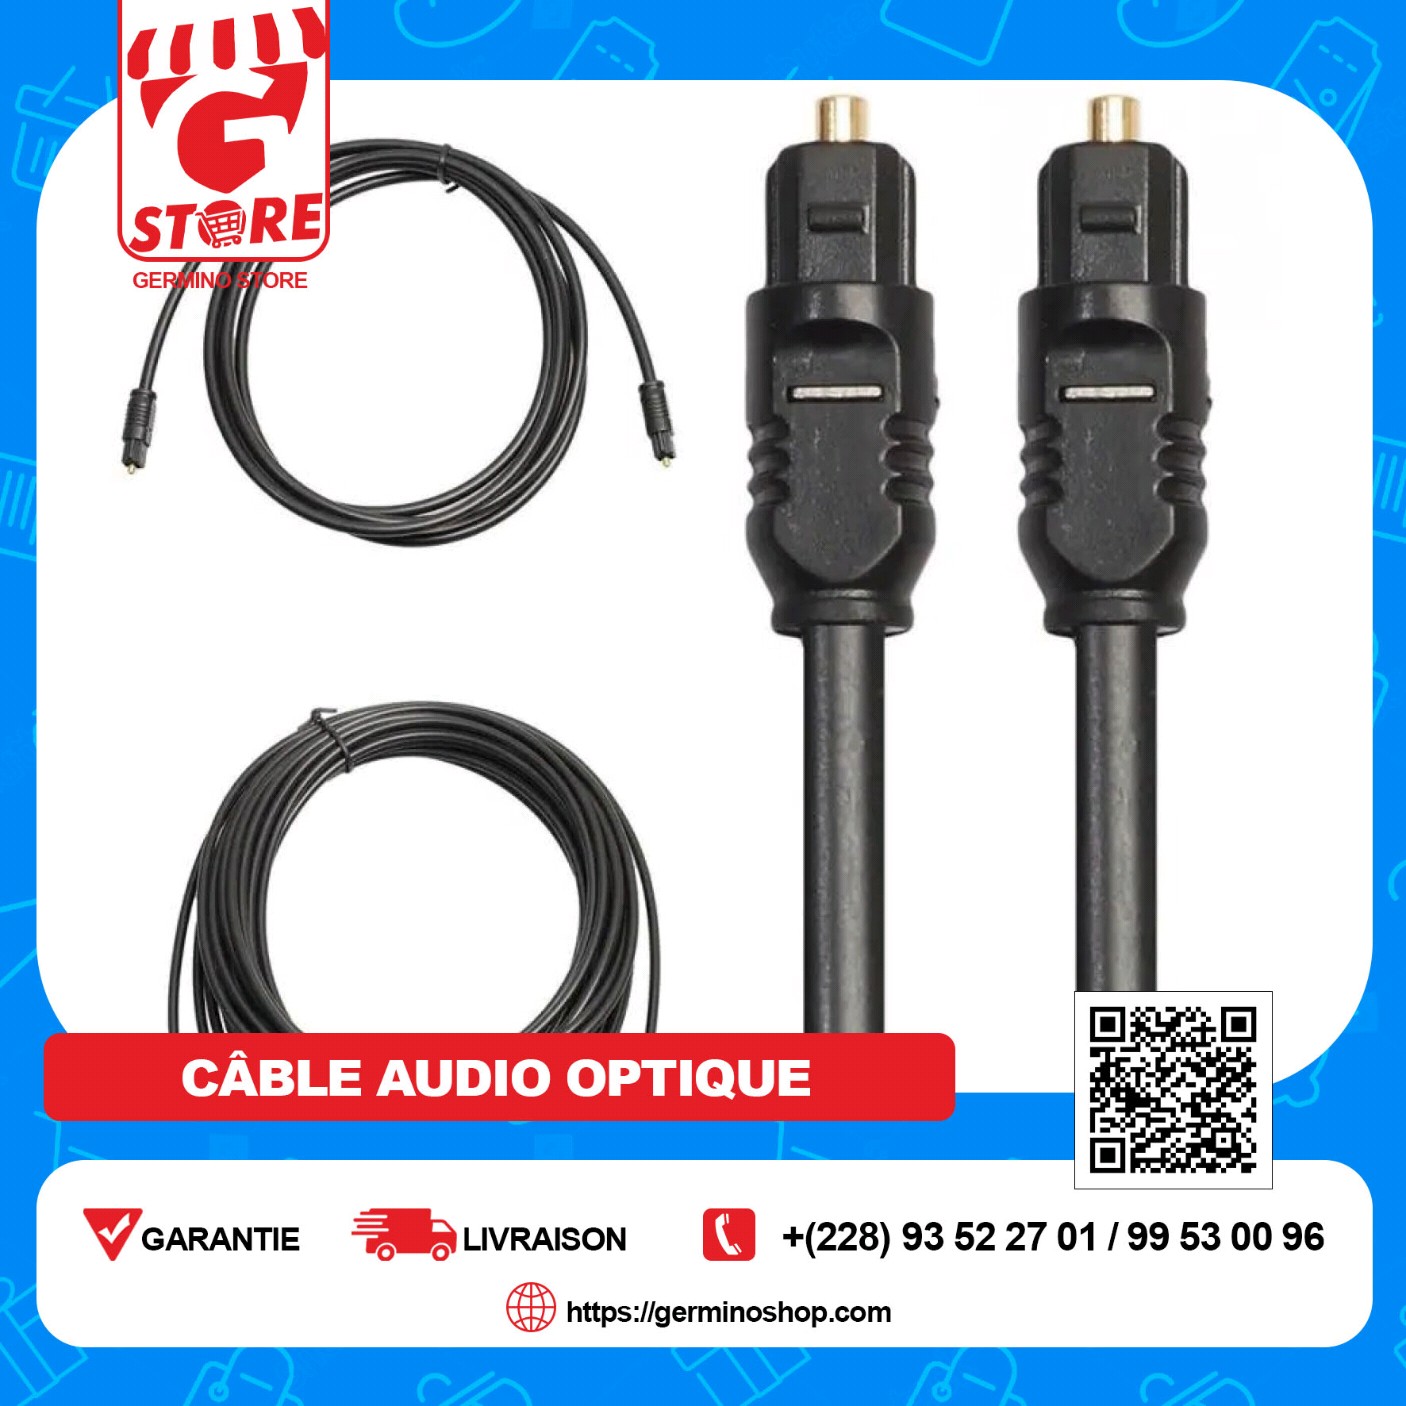 Cable optique Digital Audio câble 2 mètres